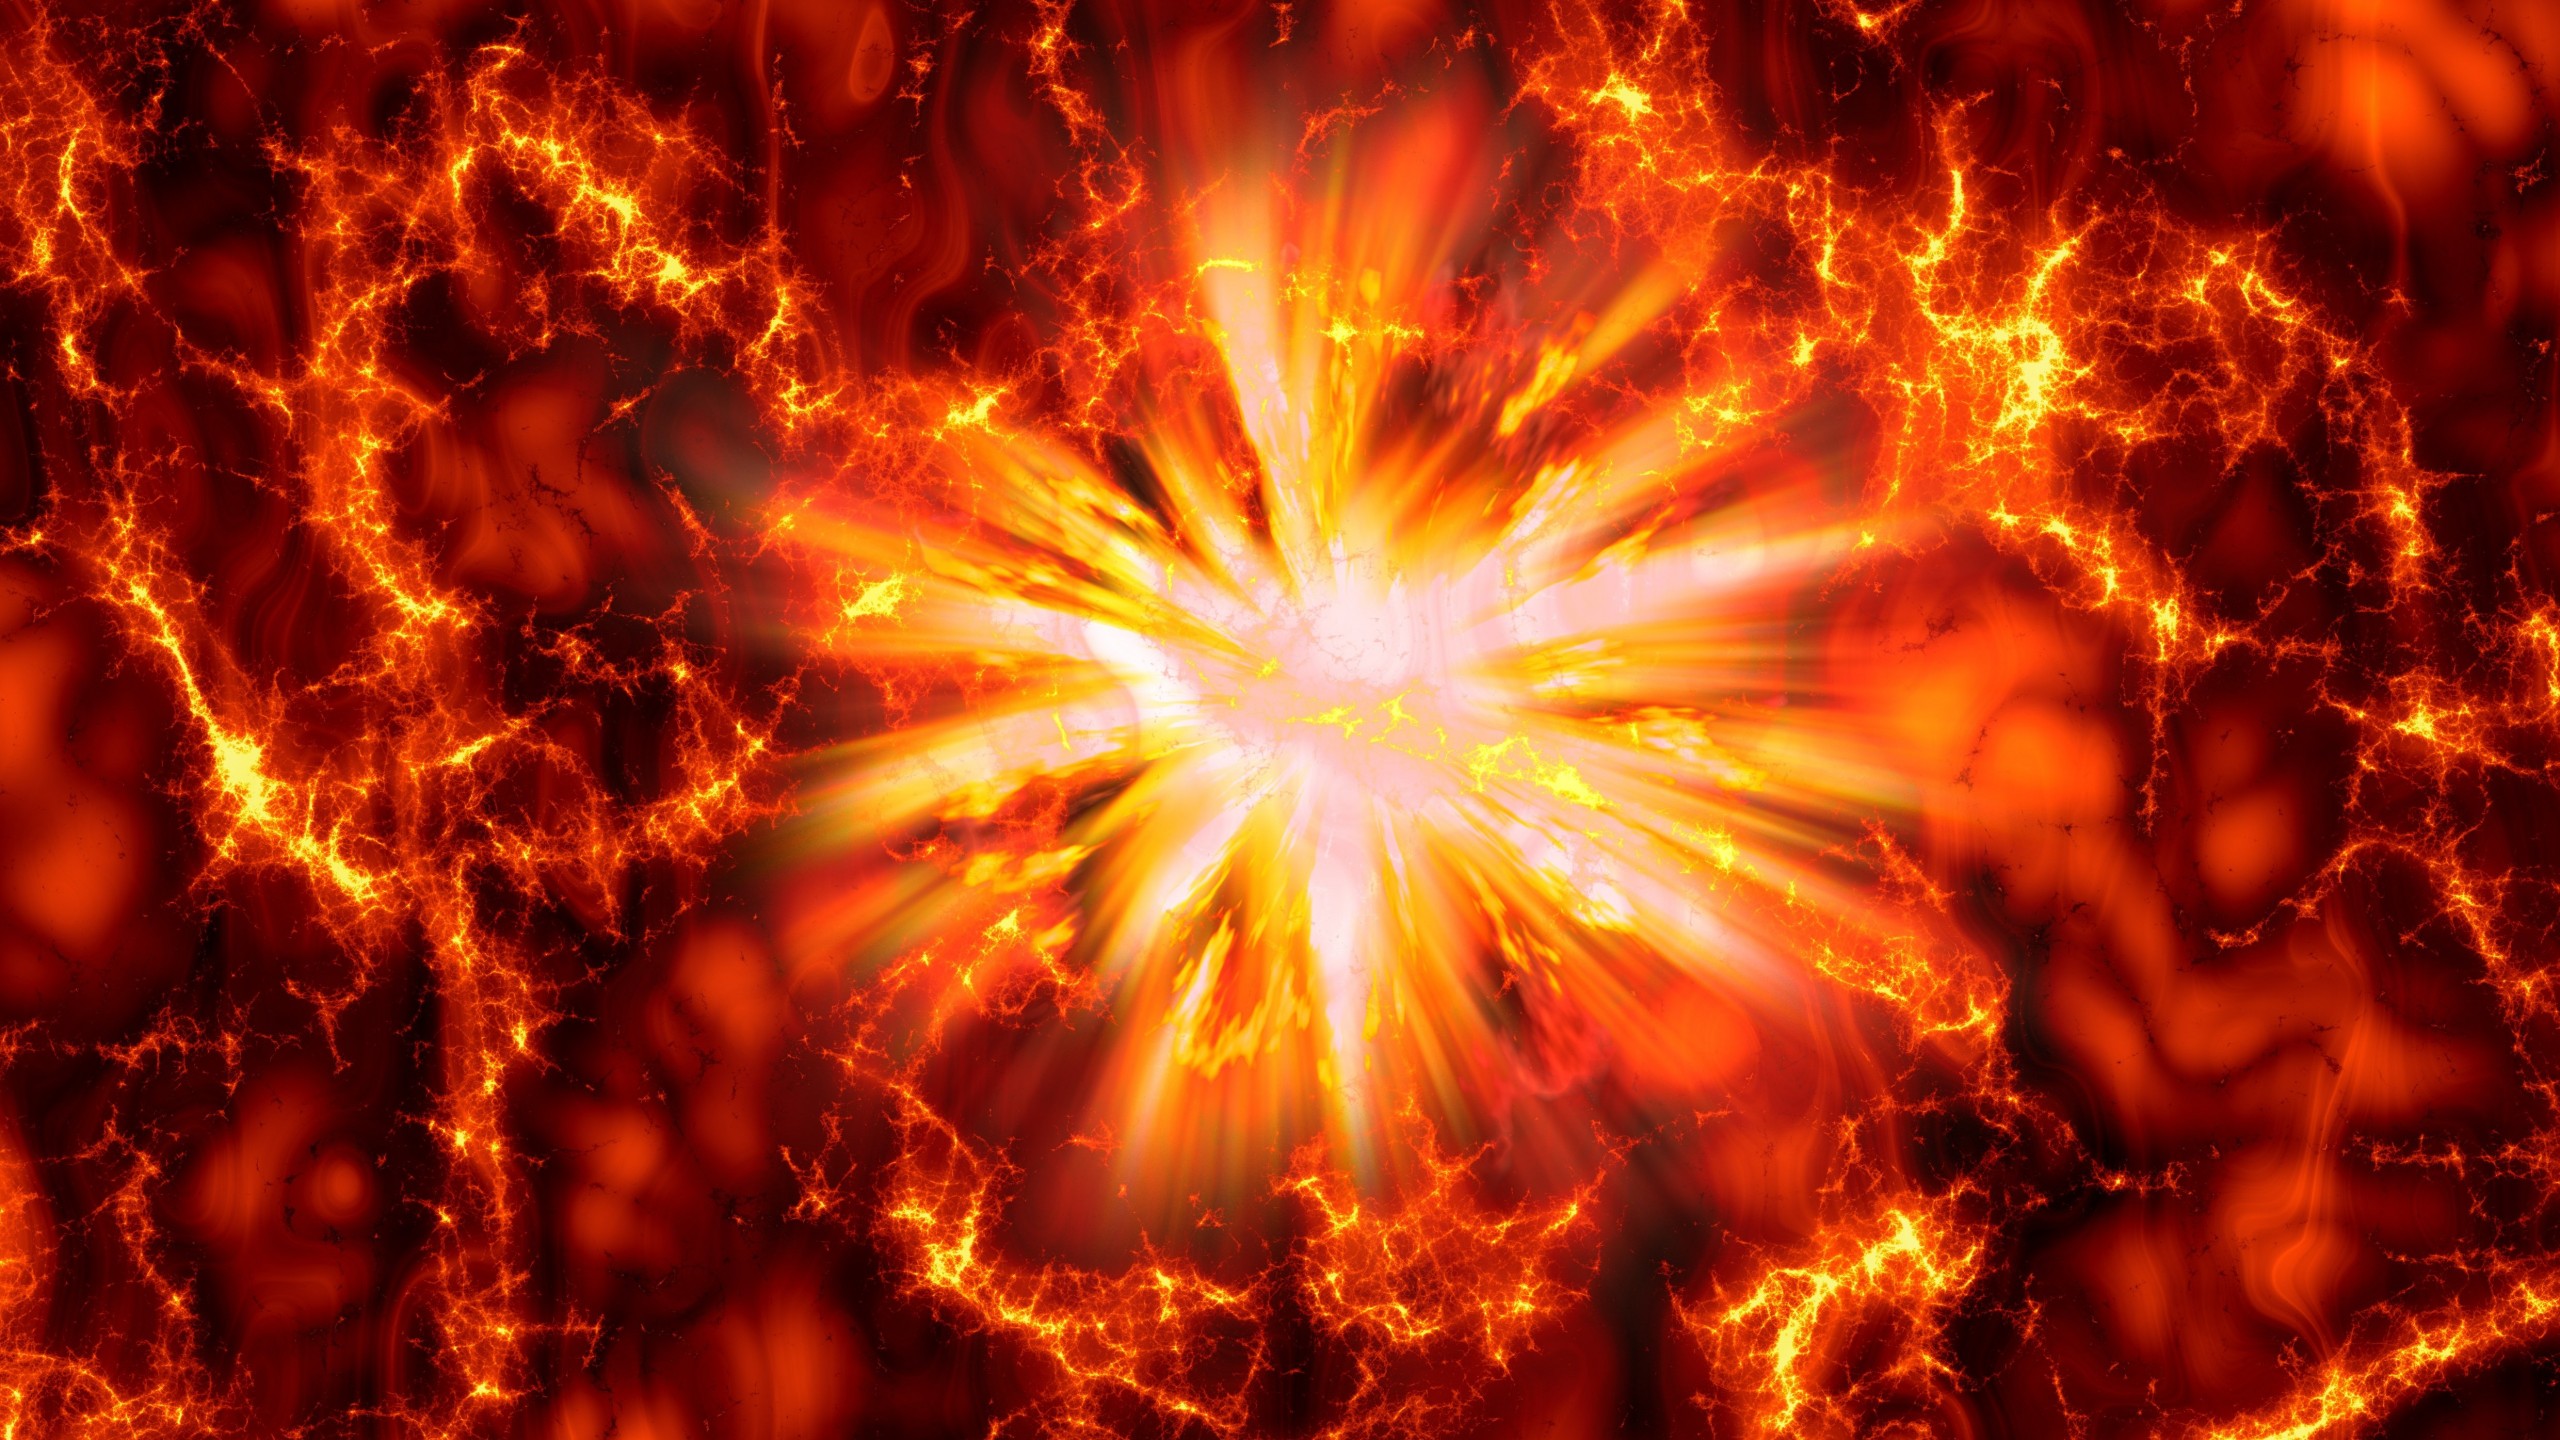 Big Bang Explosion Wallpaper